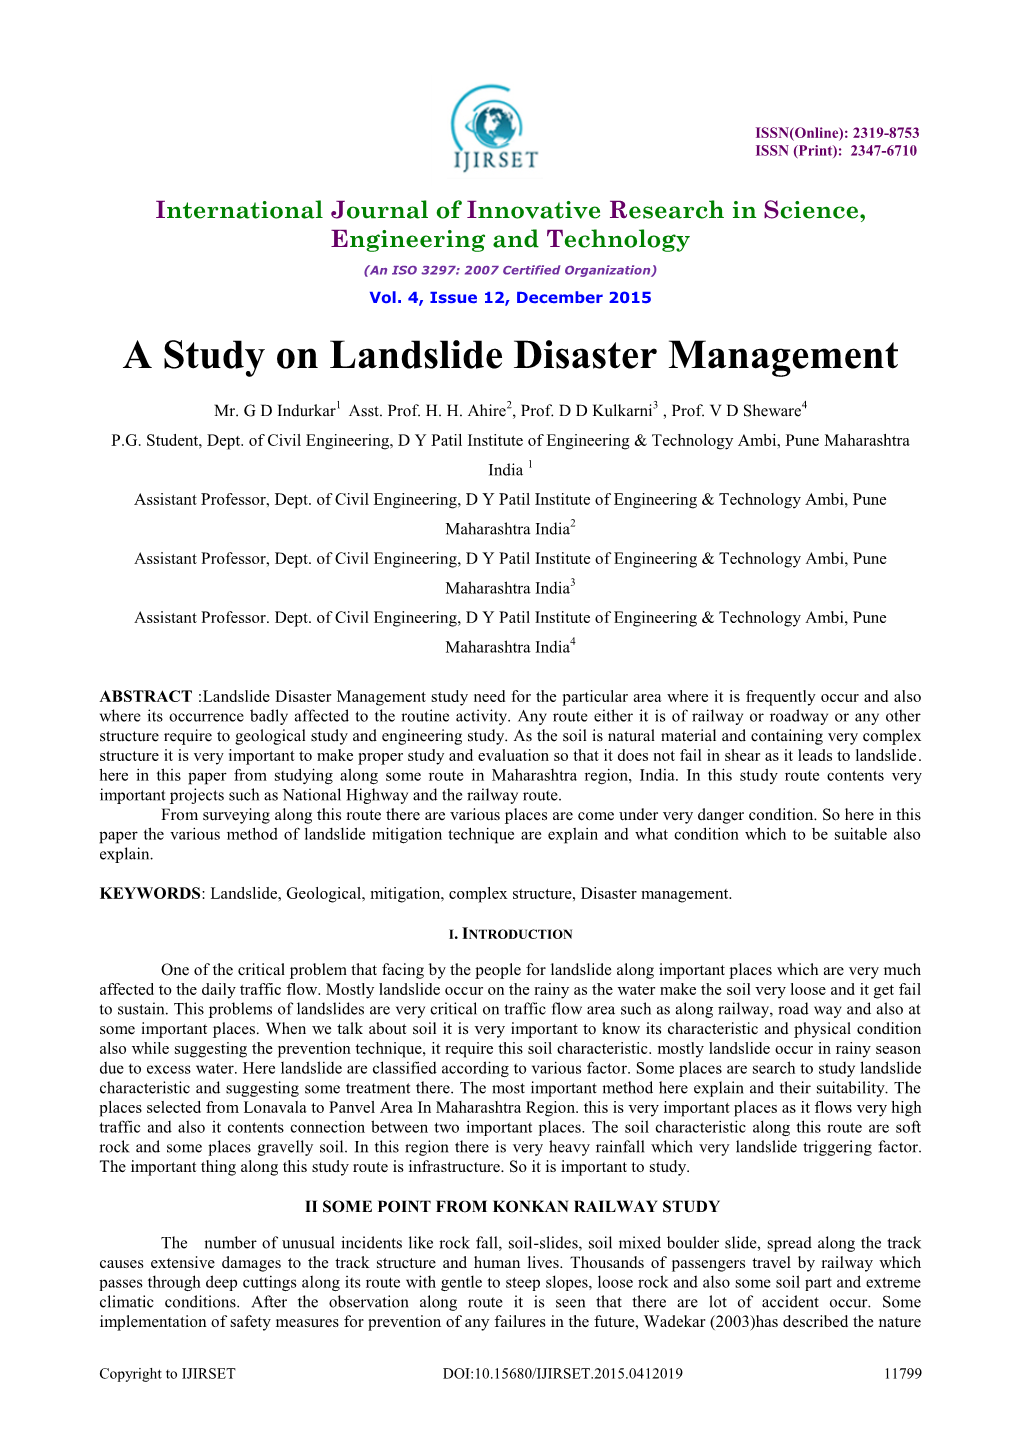 A Study on Landslide Disaster Management